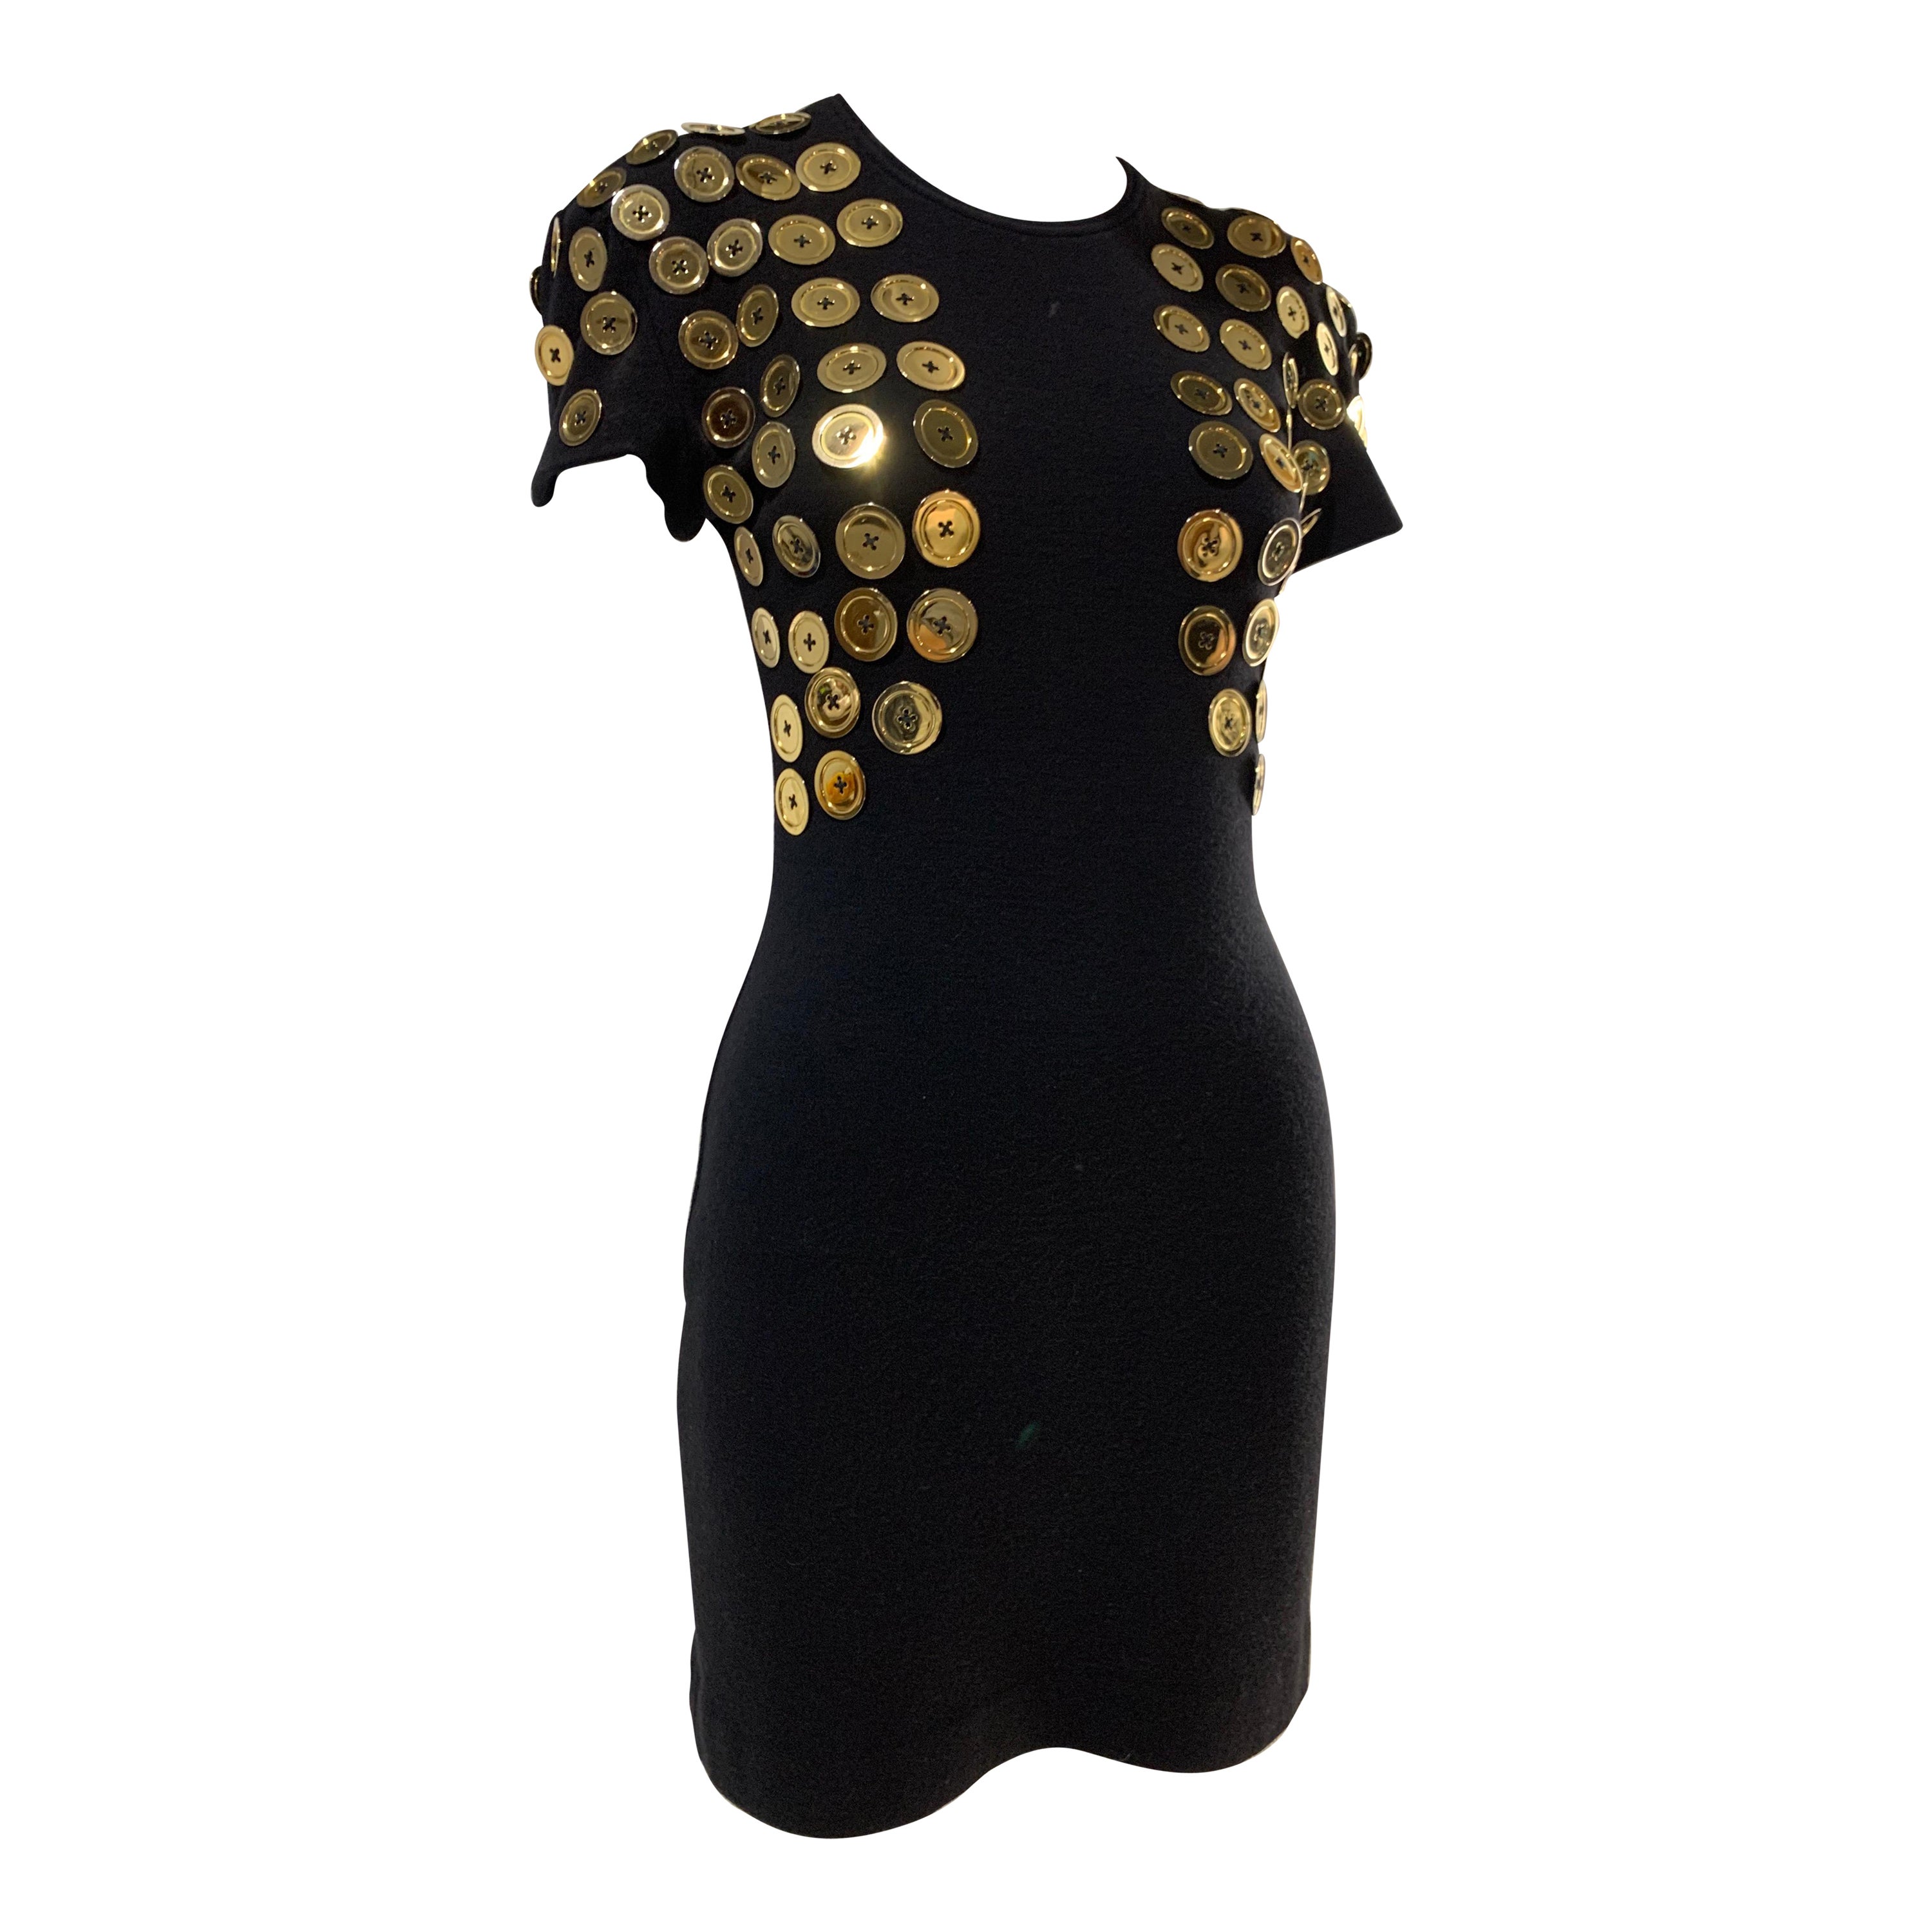 1980s Patrick Kelly Black Mini Dress w/ Trompe L'Oeil Bolero Of Gold Buttons